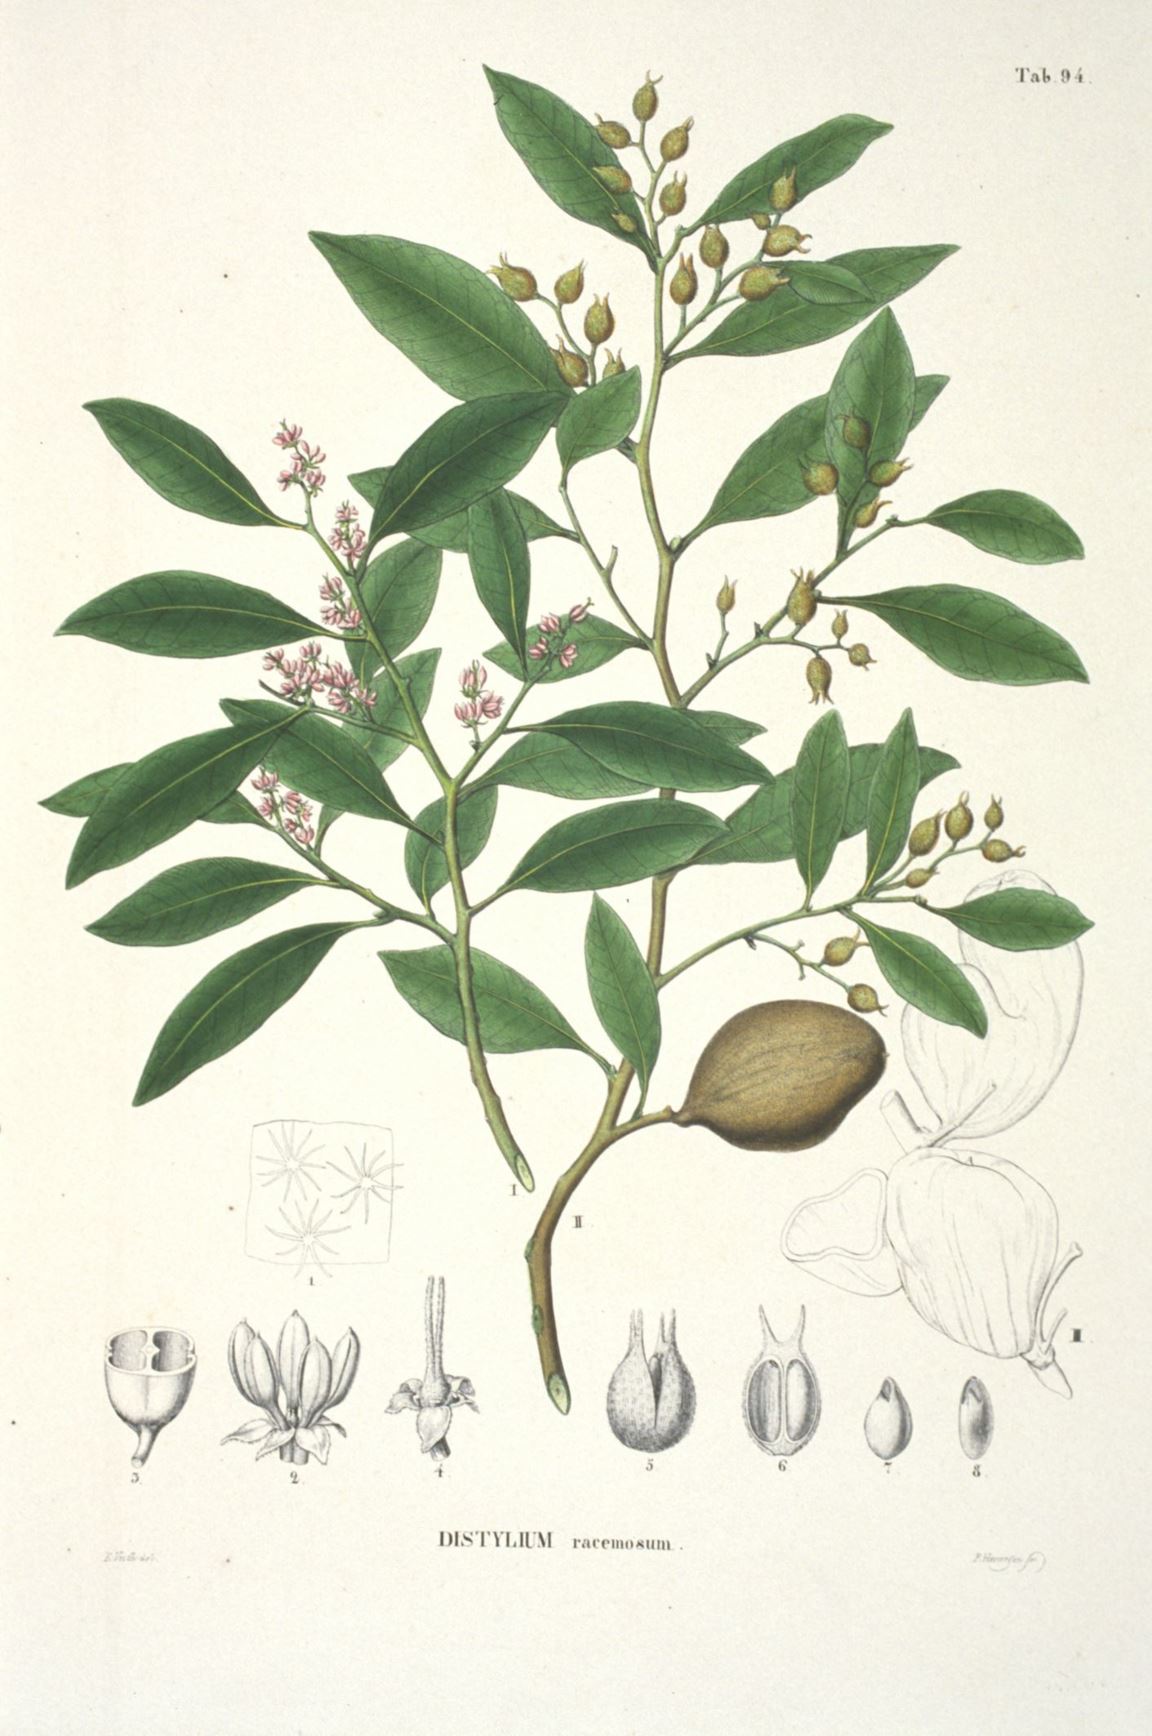 Distylium racemosum - Winter toverhazelaar, Isu tree, Isunoki, Yusuki (Omoro), Yusugi (Okinawa), 蚊母树 wen mu shu